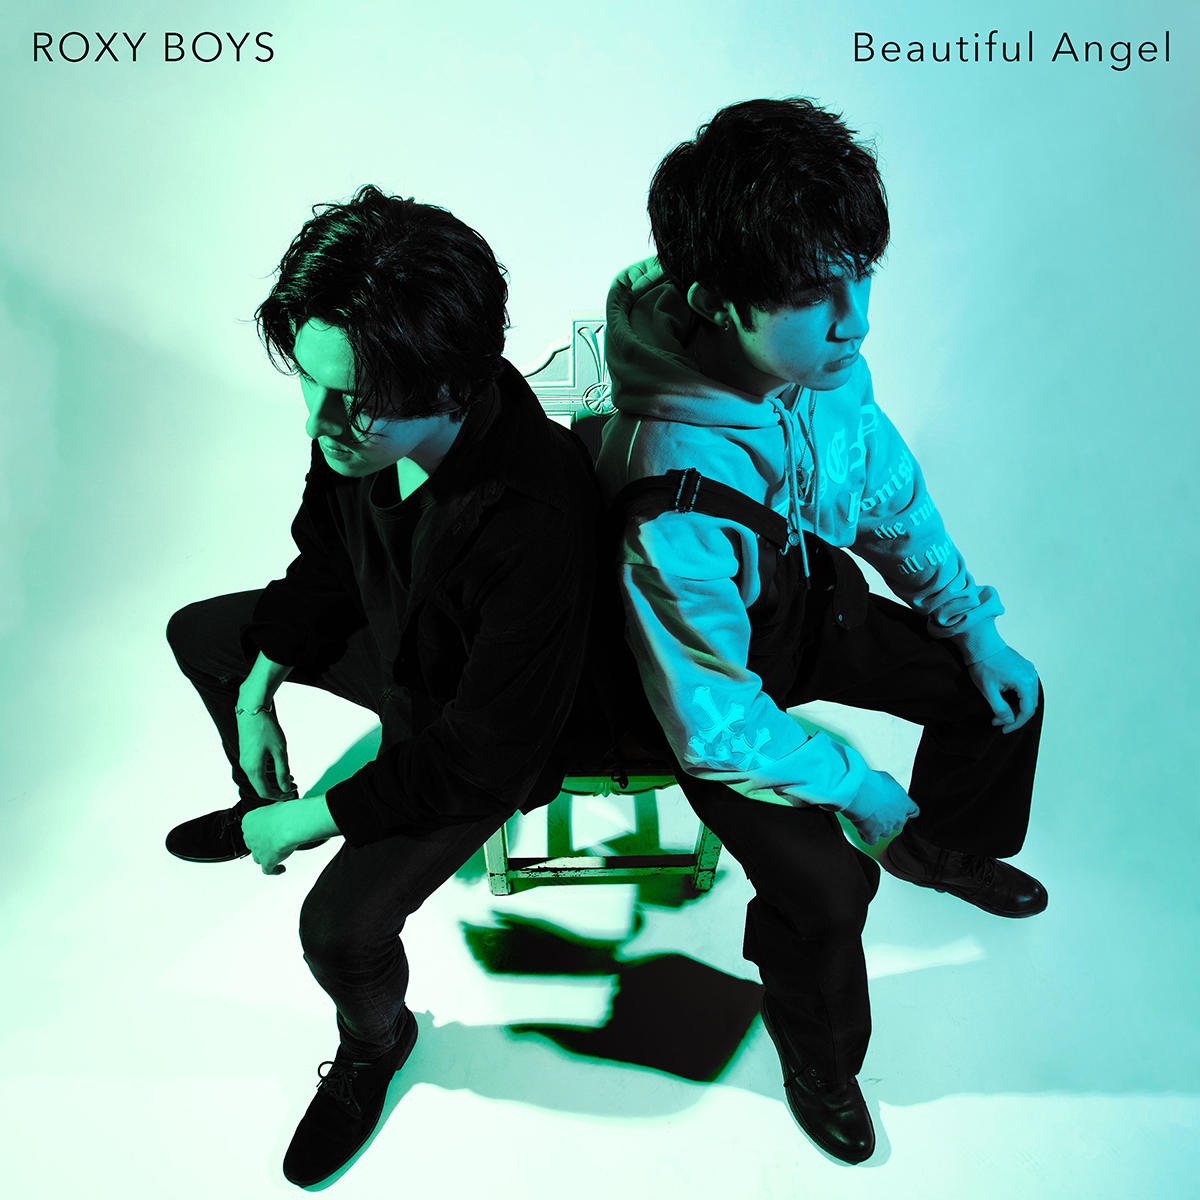 BEAUTIFUL-ANGEL_ROXY-BOYS_jk_20230602.jpg